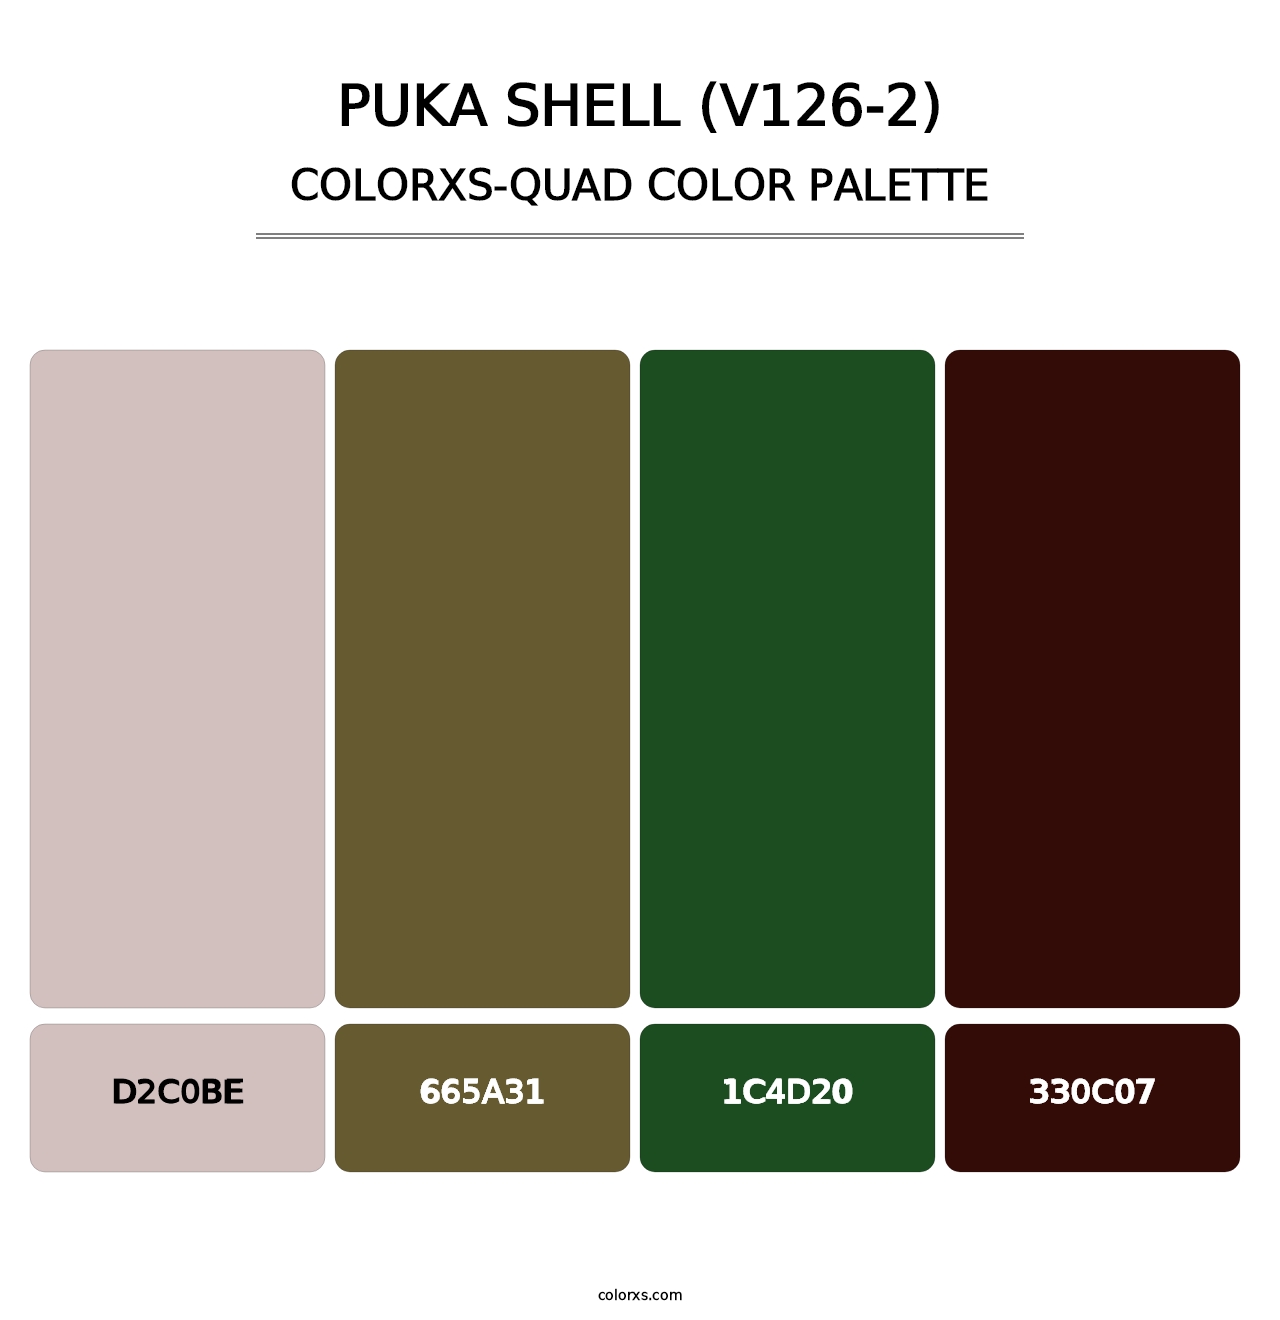 Puka Shell (V126-2) - Colorxs Quad Palette